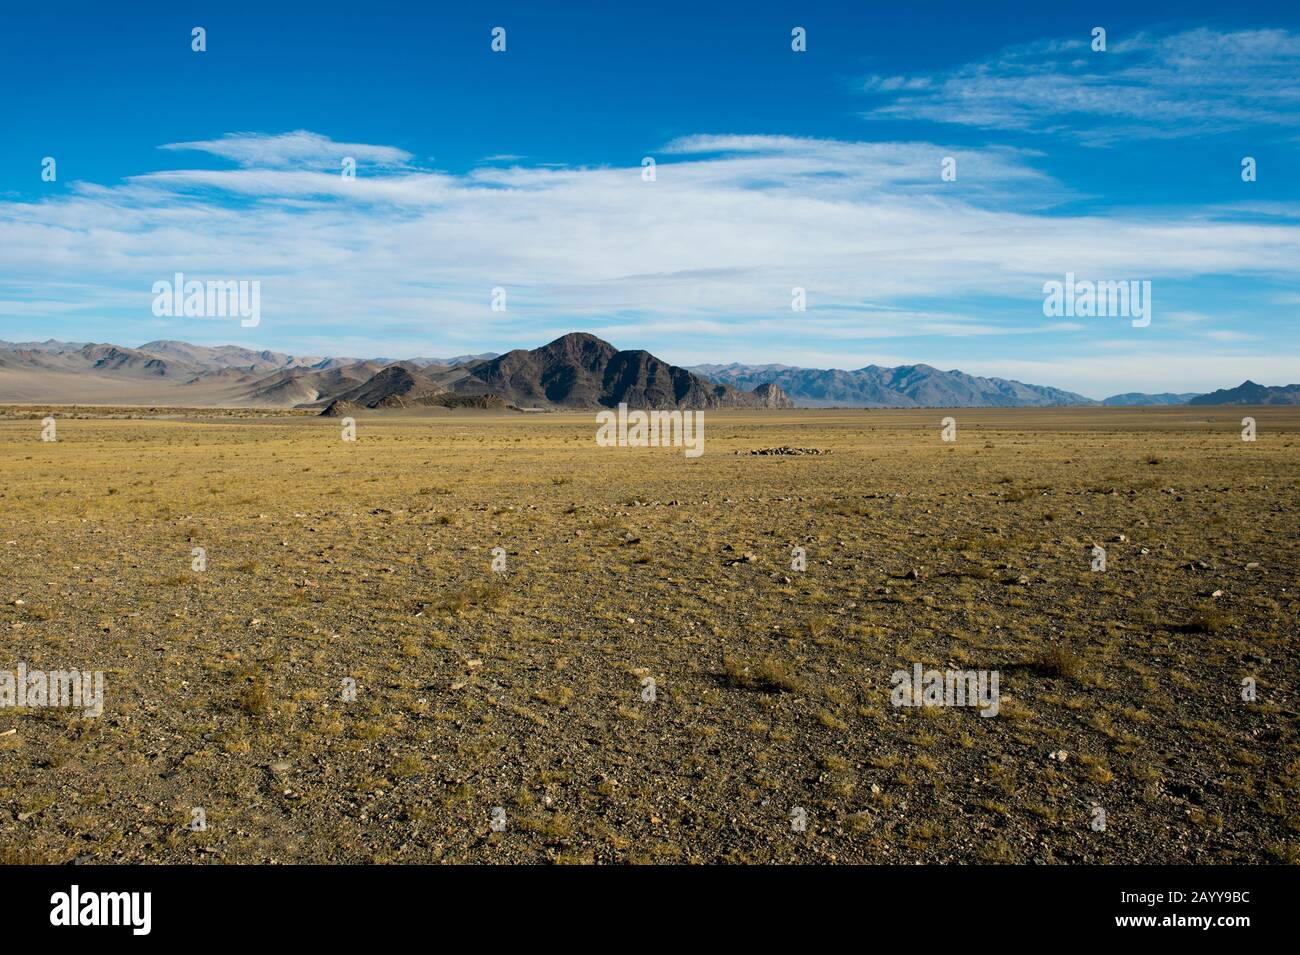 Paysage stérile près de la ville d'Ulgii (Ölgii) dans la province de Bayan-Ulgii dans l'ouest de la Mongolie. Banque D'Images